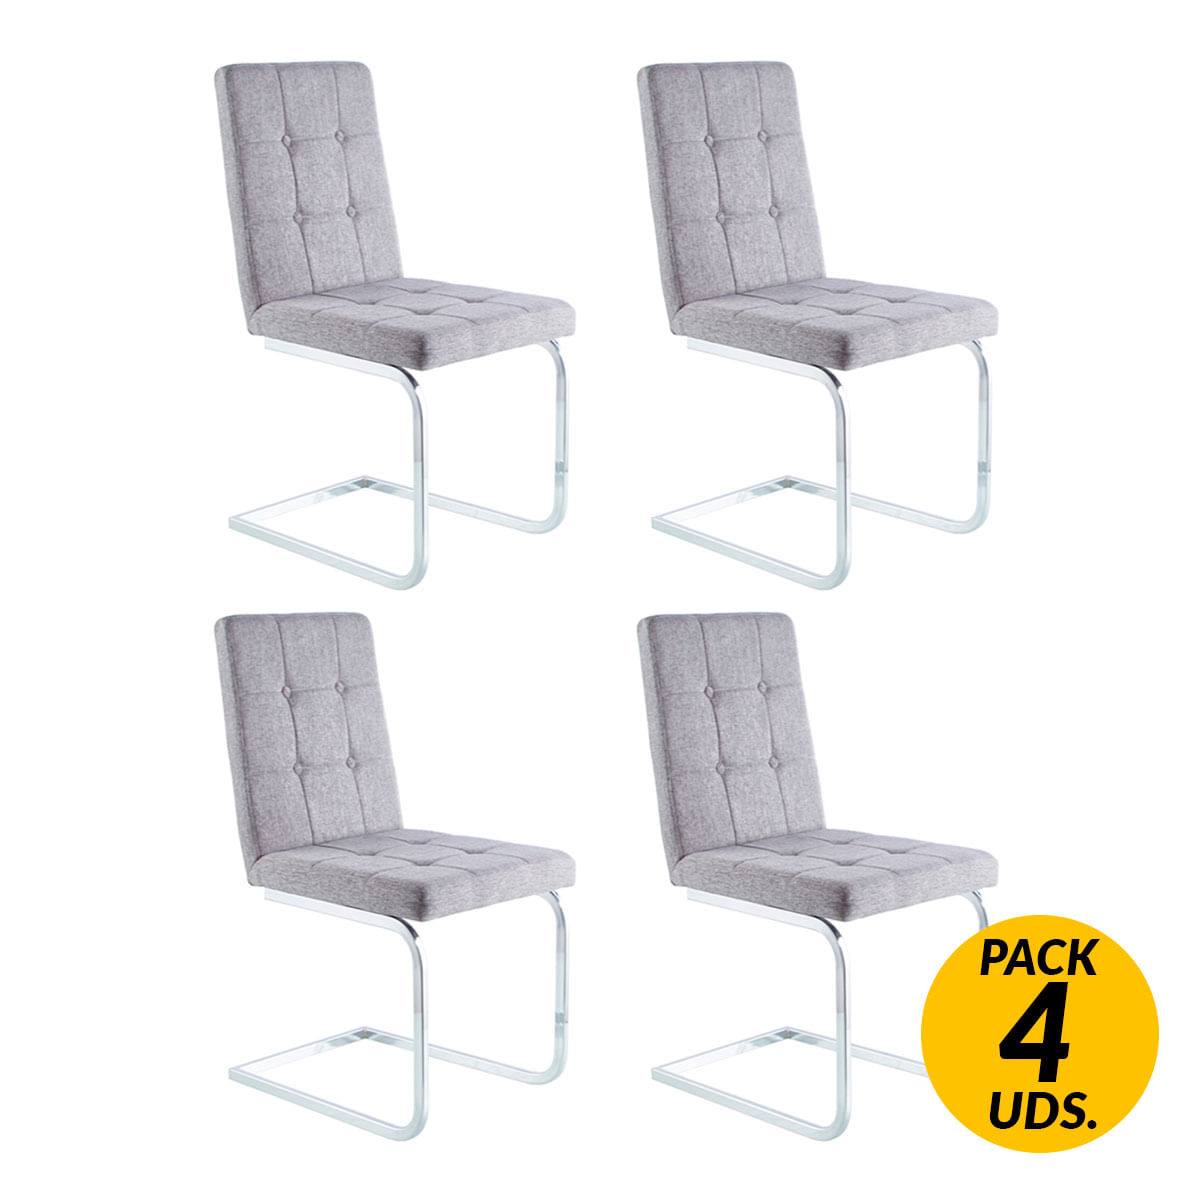 Adec - Adec Pack de 4 sillas de comedor Vanity  diseño flotante